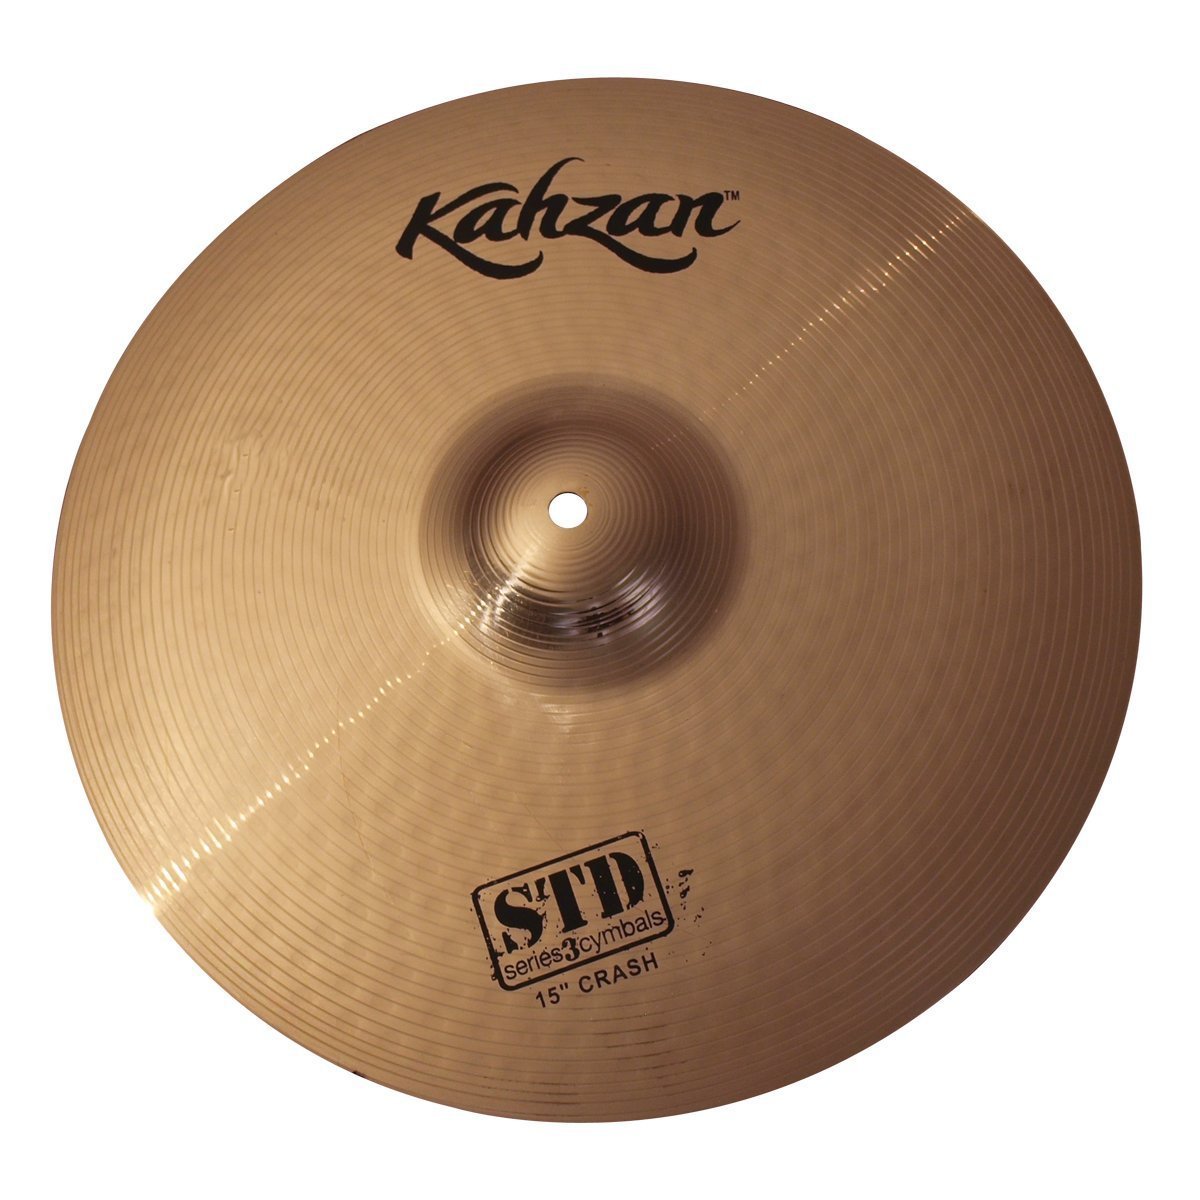 Kahzan 'STD-3 Series' Crash Cymbal (15")